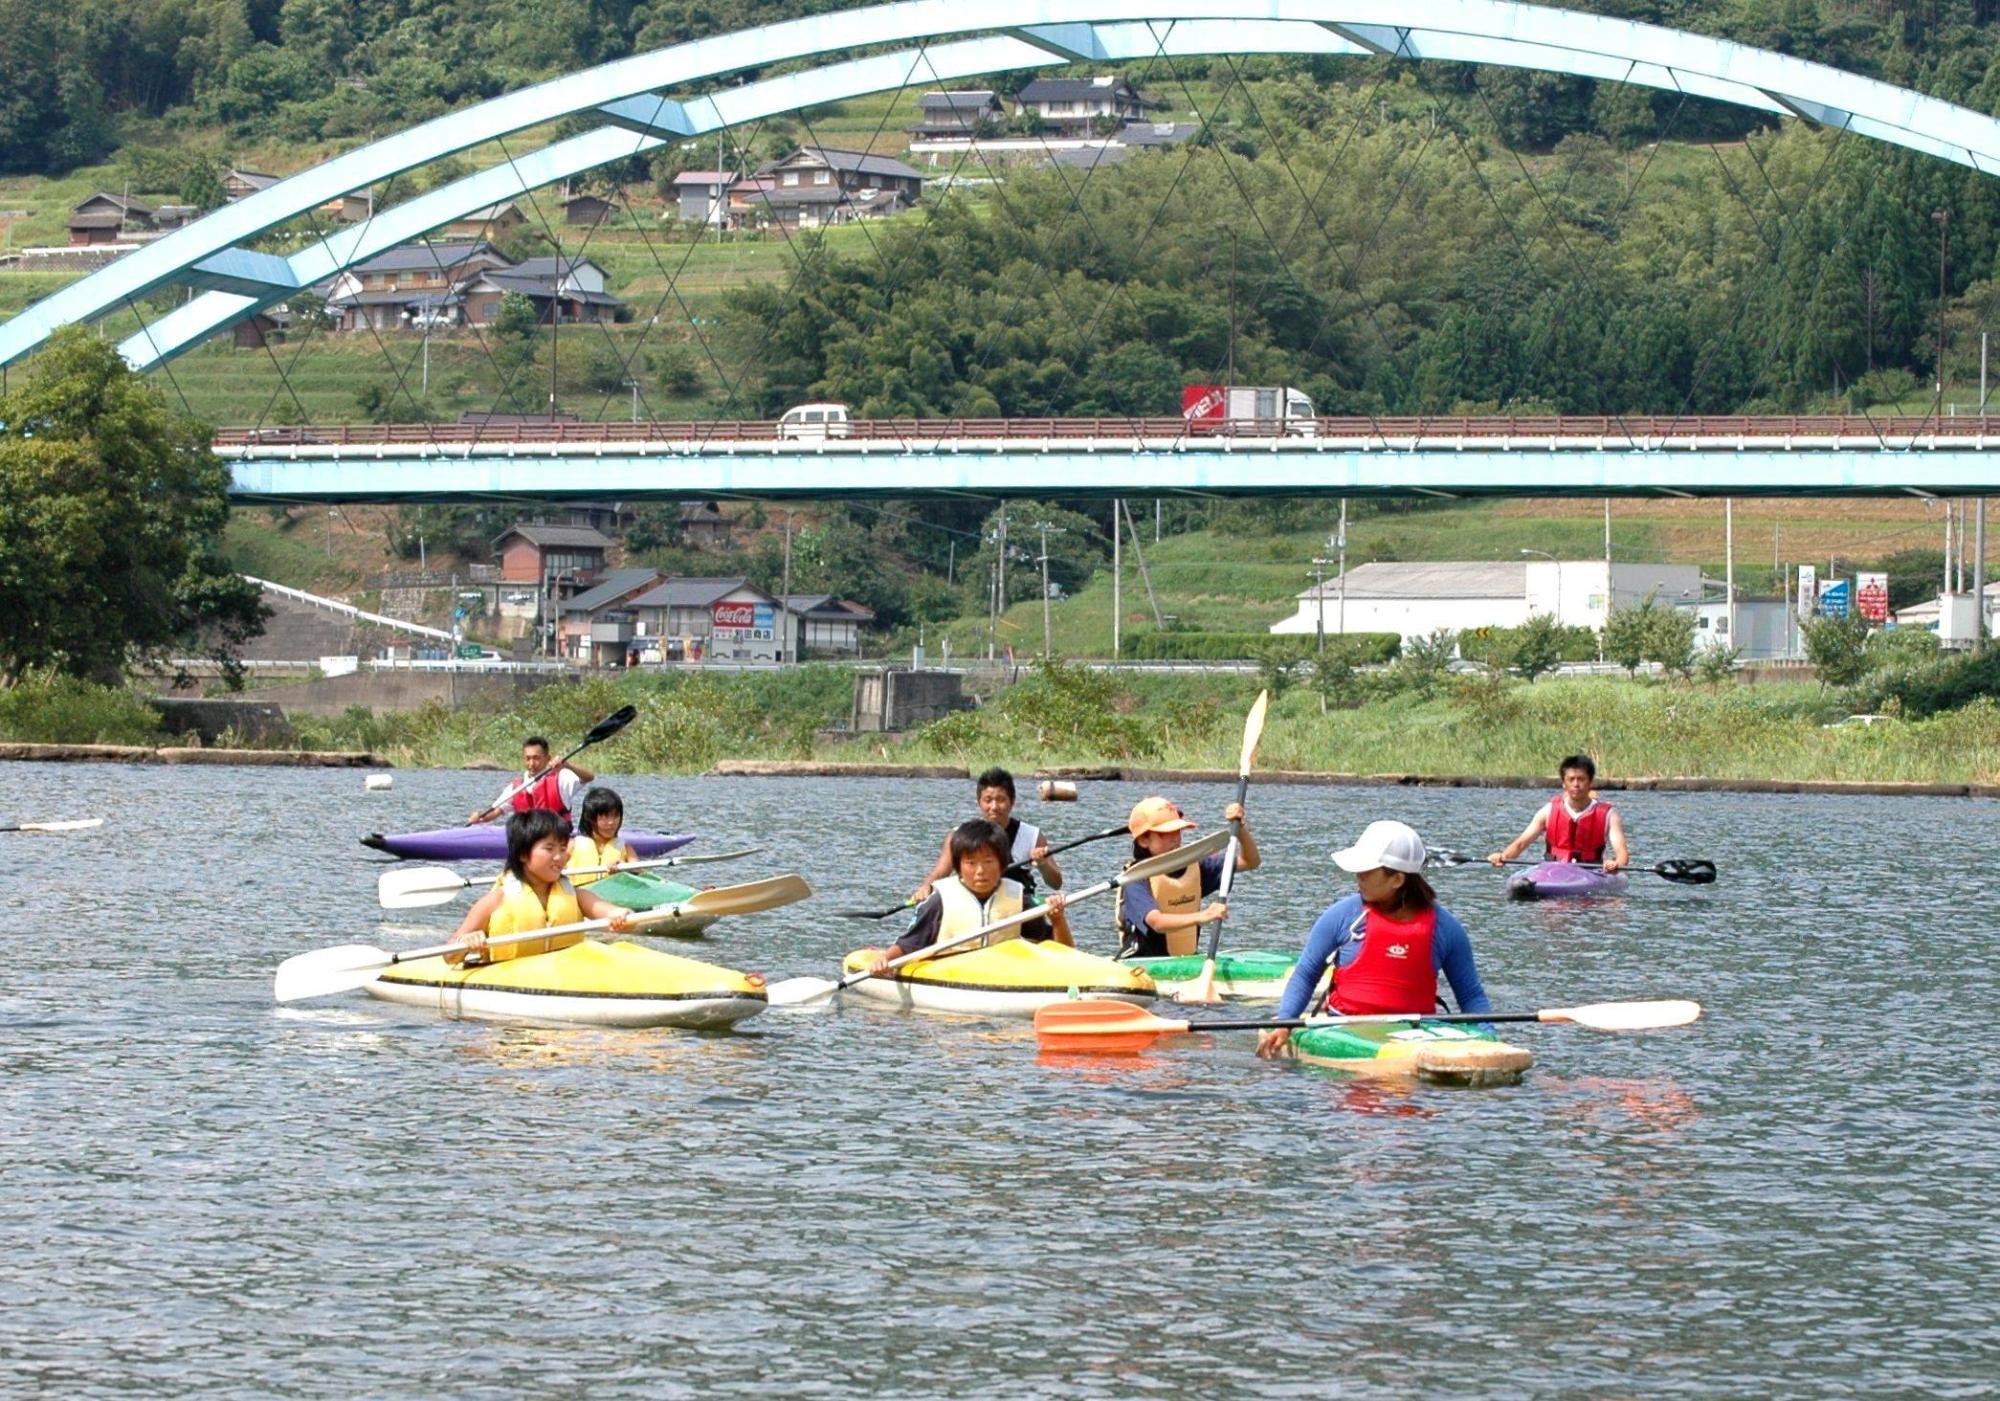 由良川で指導員の指導を受けながらカヌーに乗りオールを漕いでいる参加者たちの写真